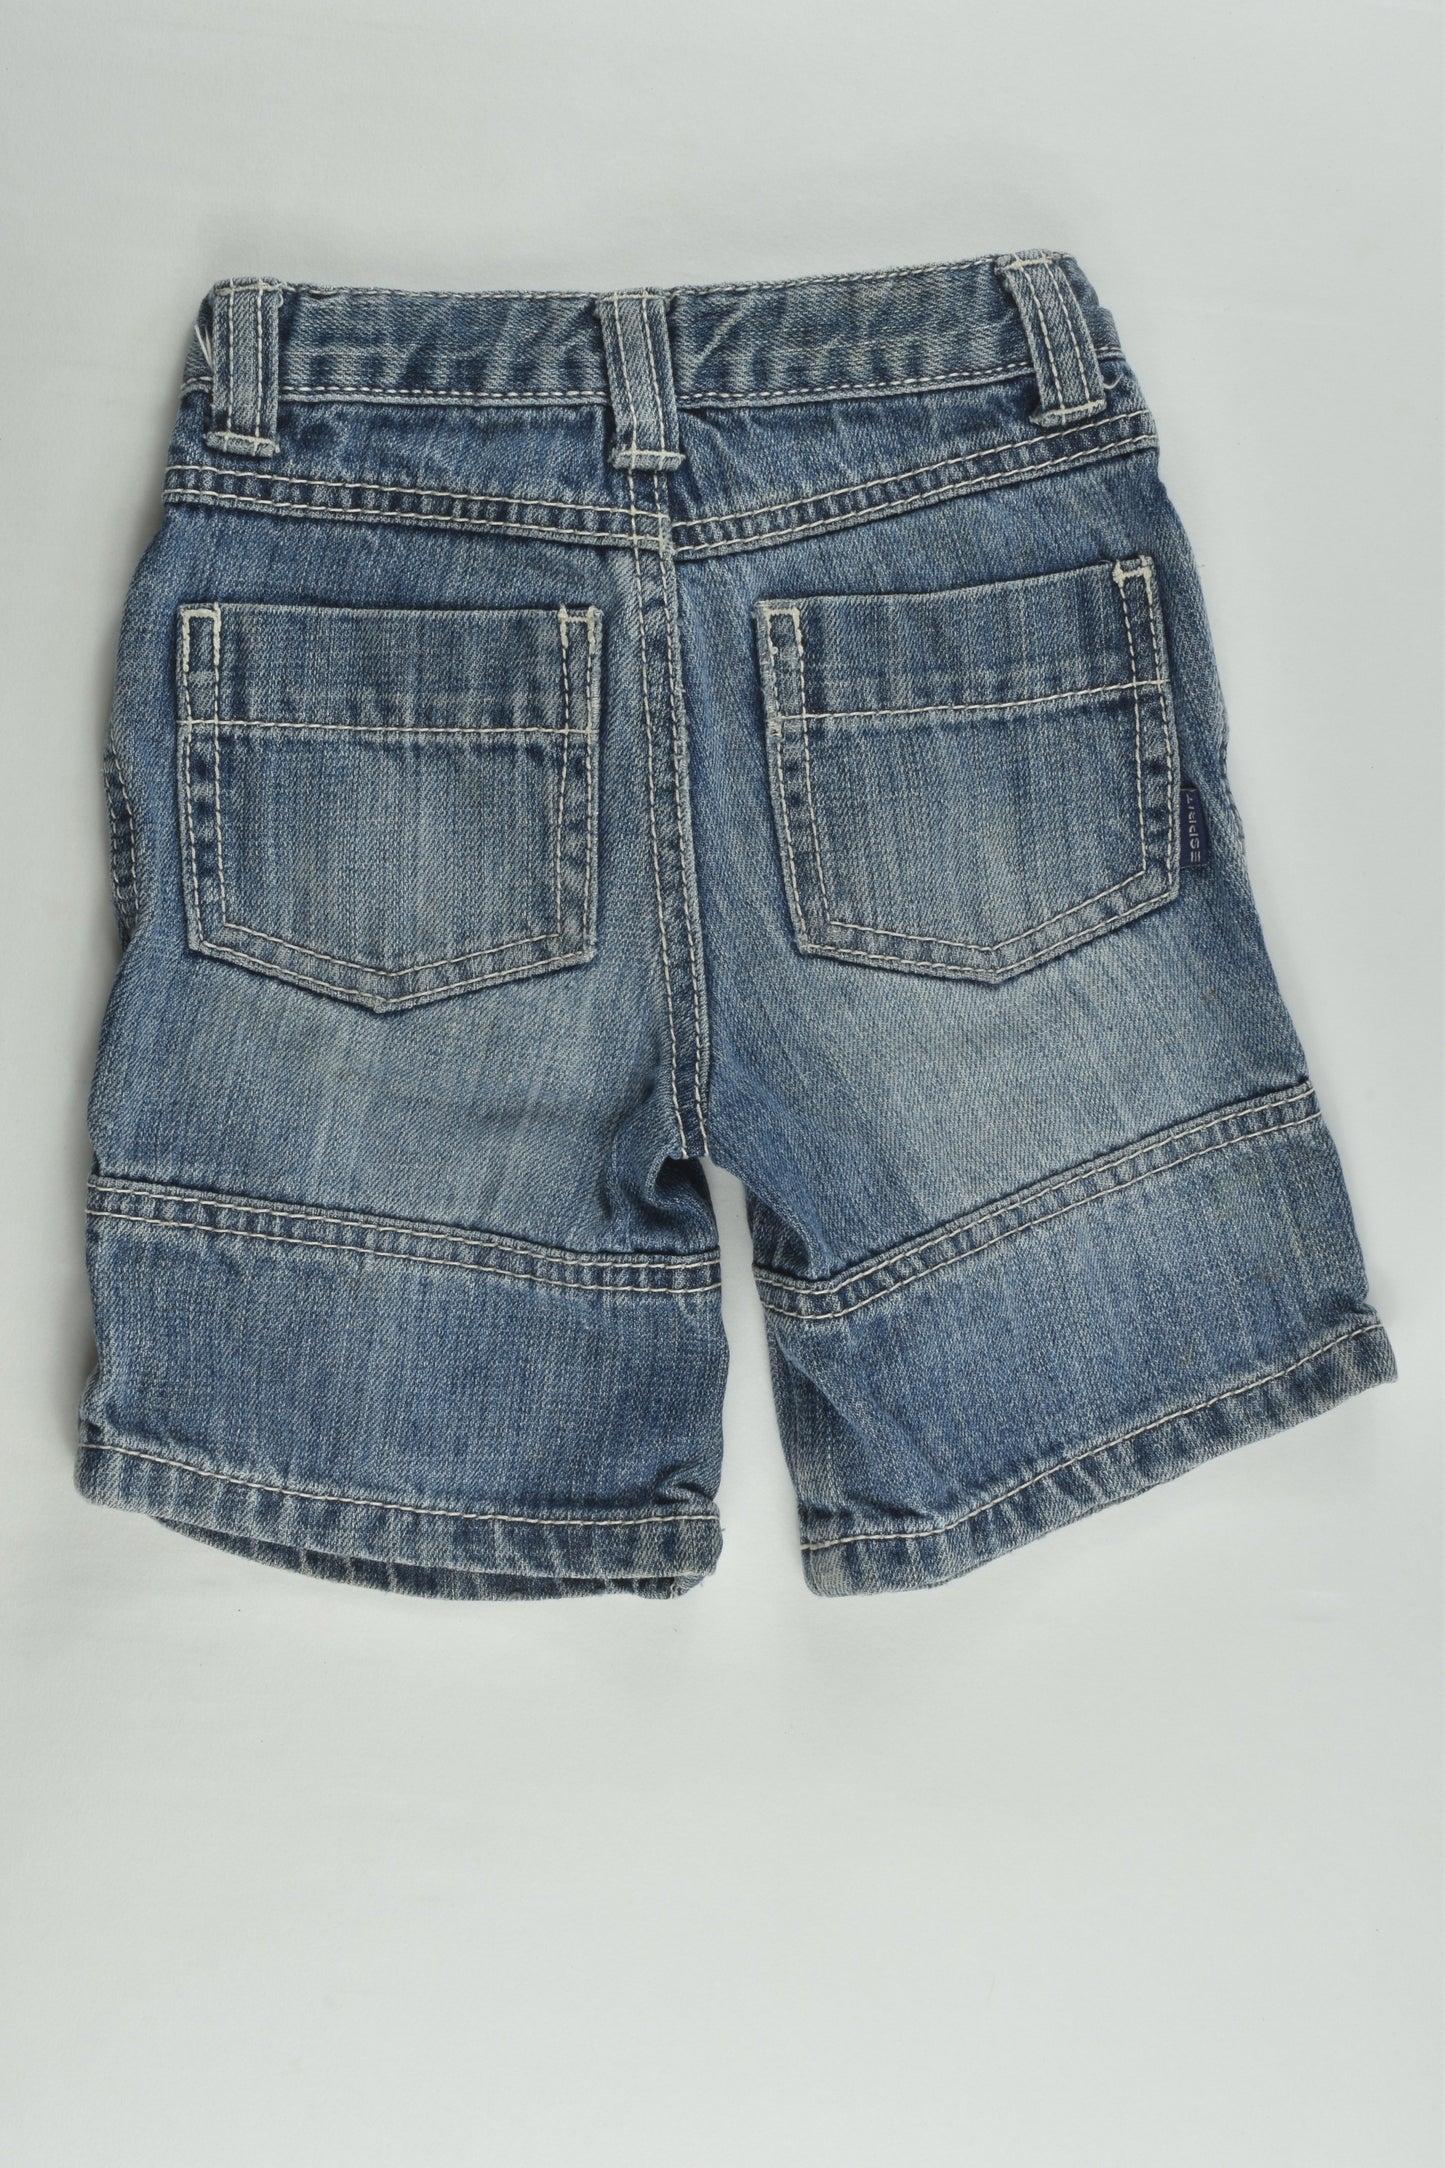 Esprit Size 0 (12 months) Denim Shorts